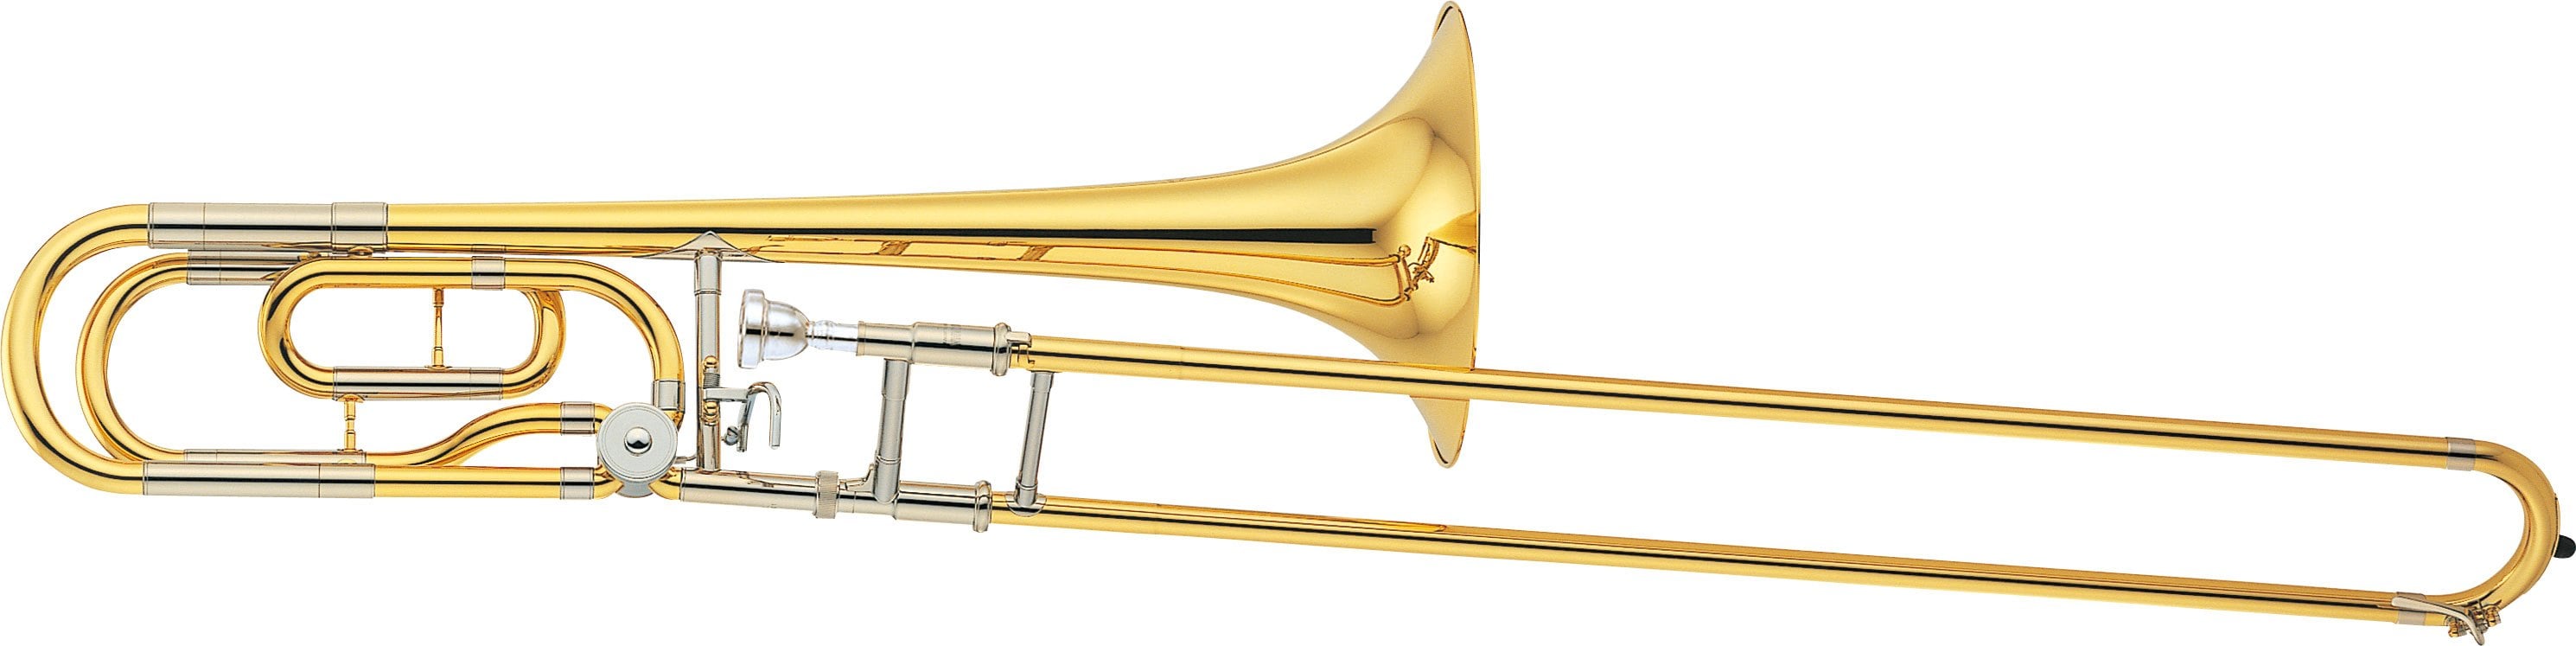 trombon yamaha ysl 620